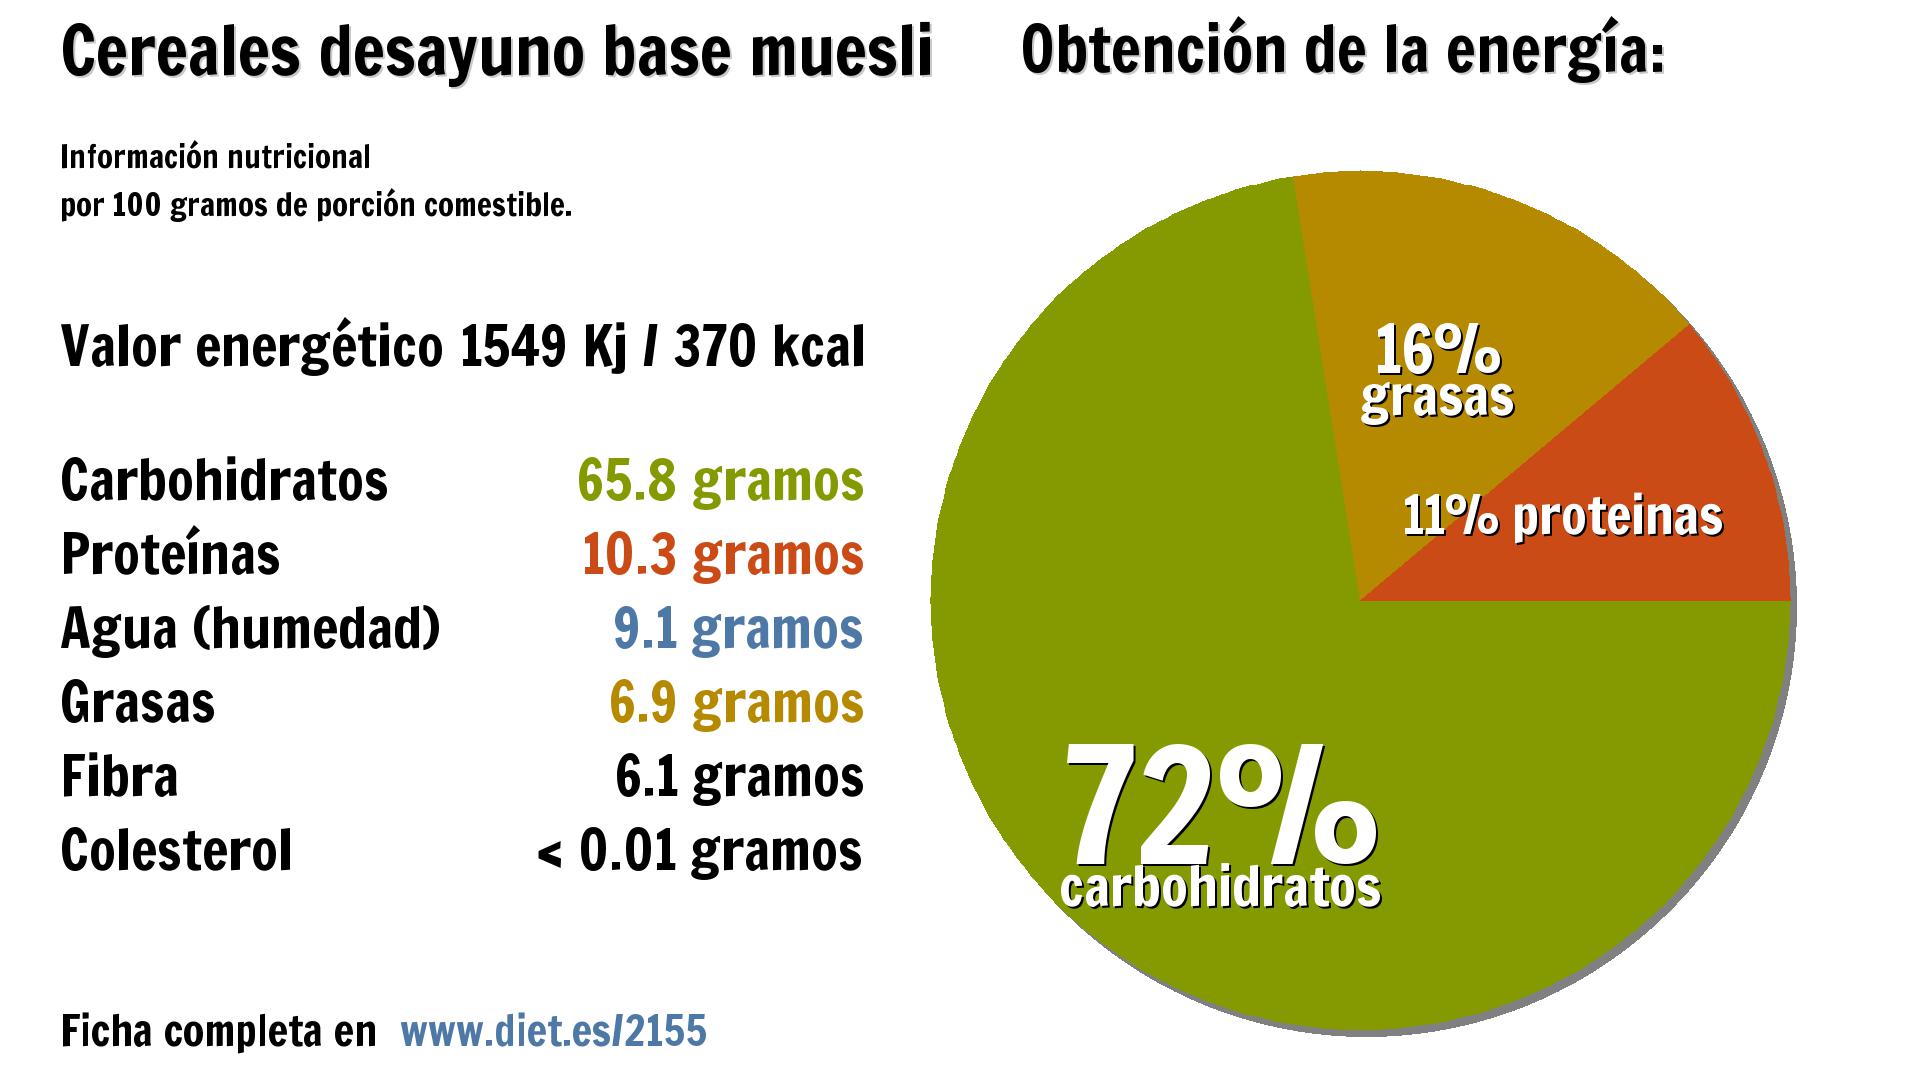 Cereales desayuno base muesli: energía 1549 Kj, carbohidratos 66 g., proteínas 10 g., agua 9 g., grasas 7 g. y fibra 6 g.